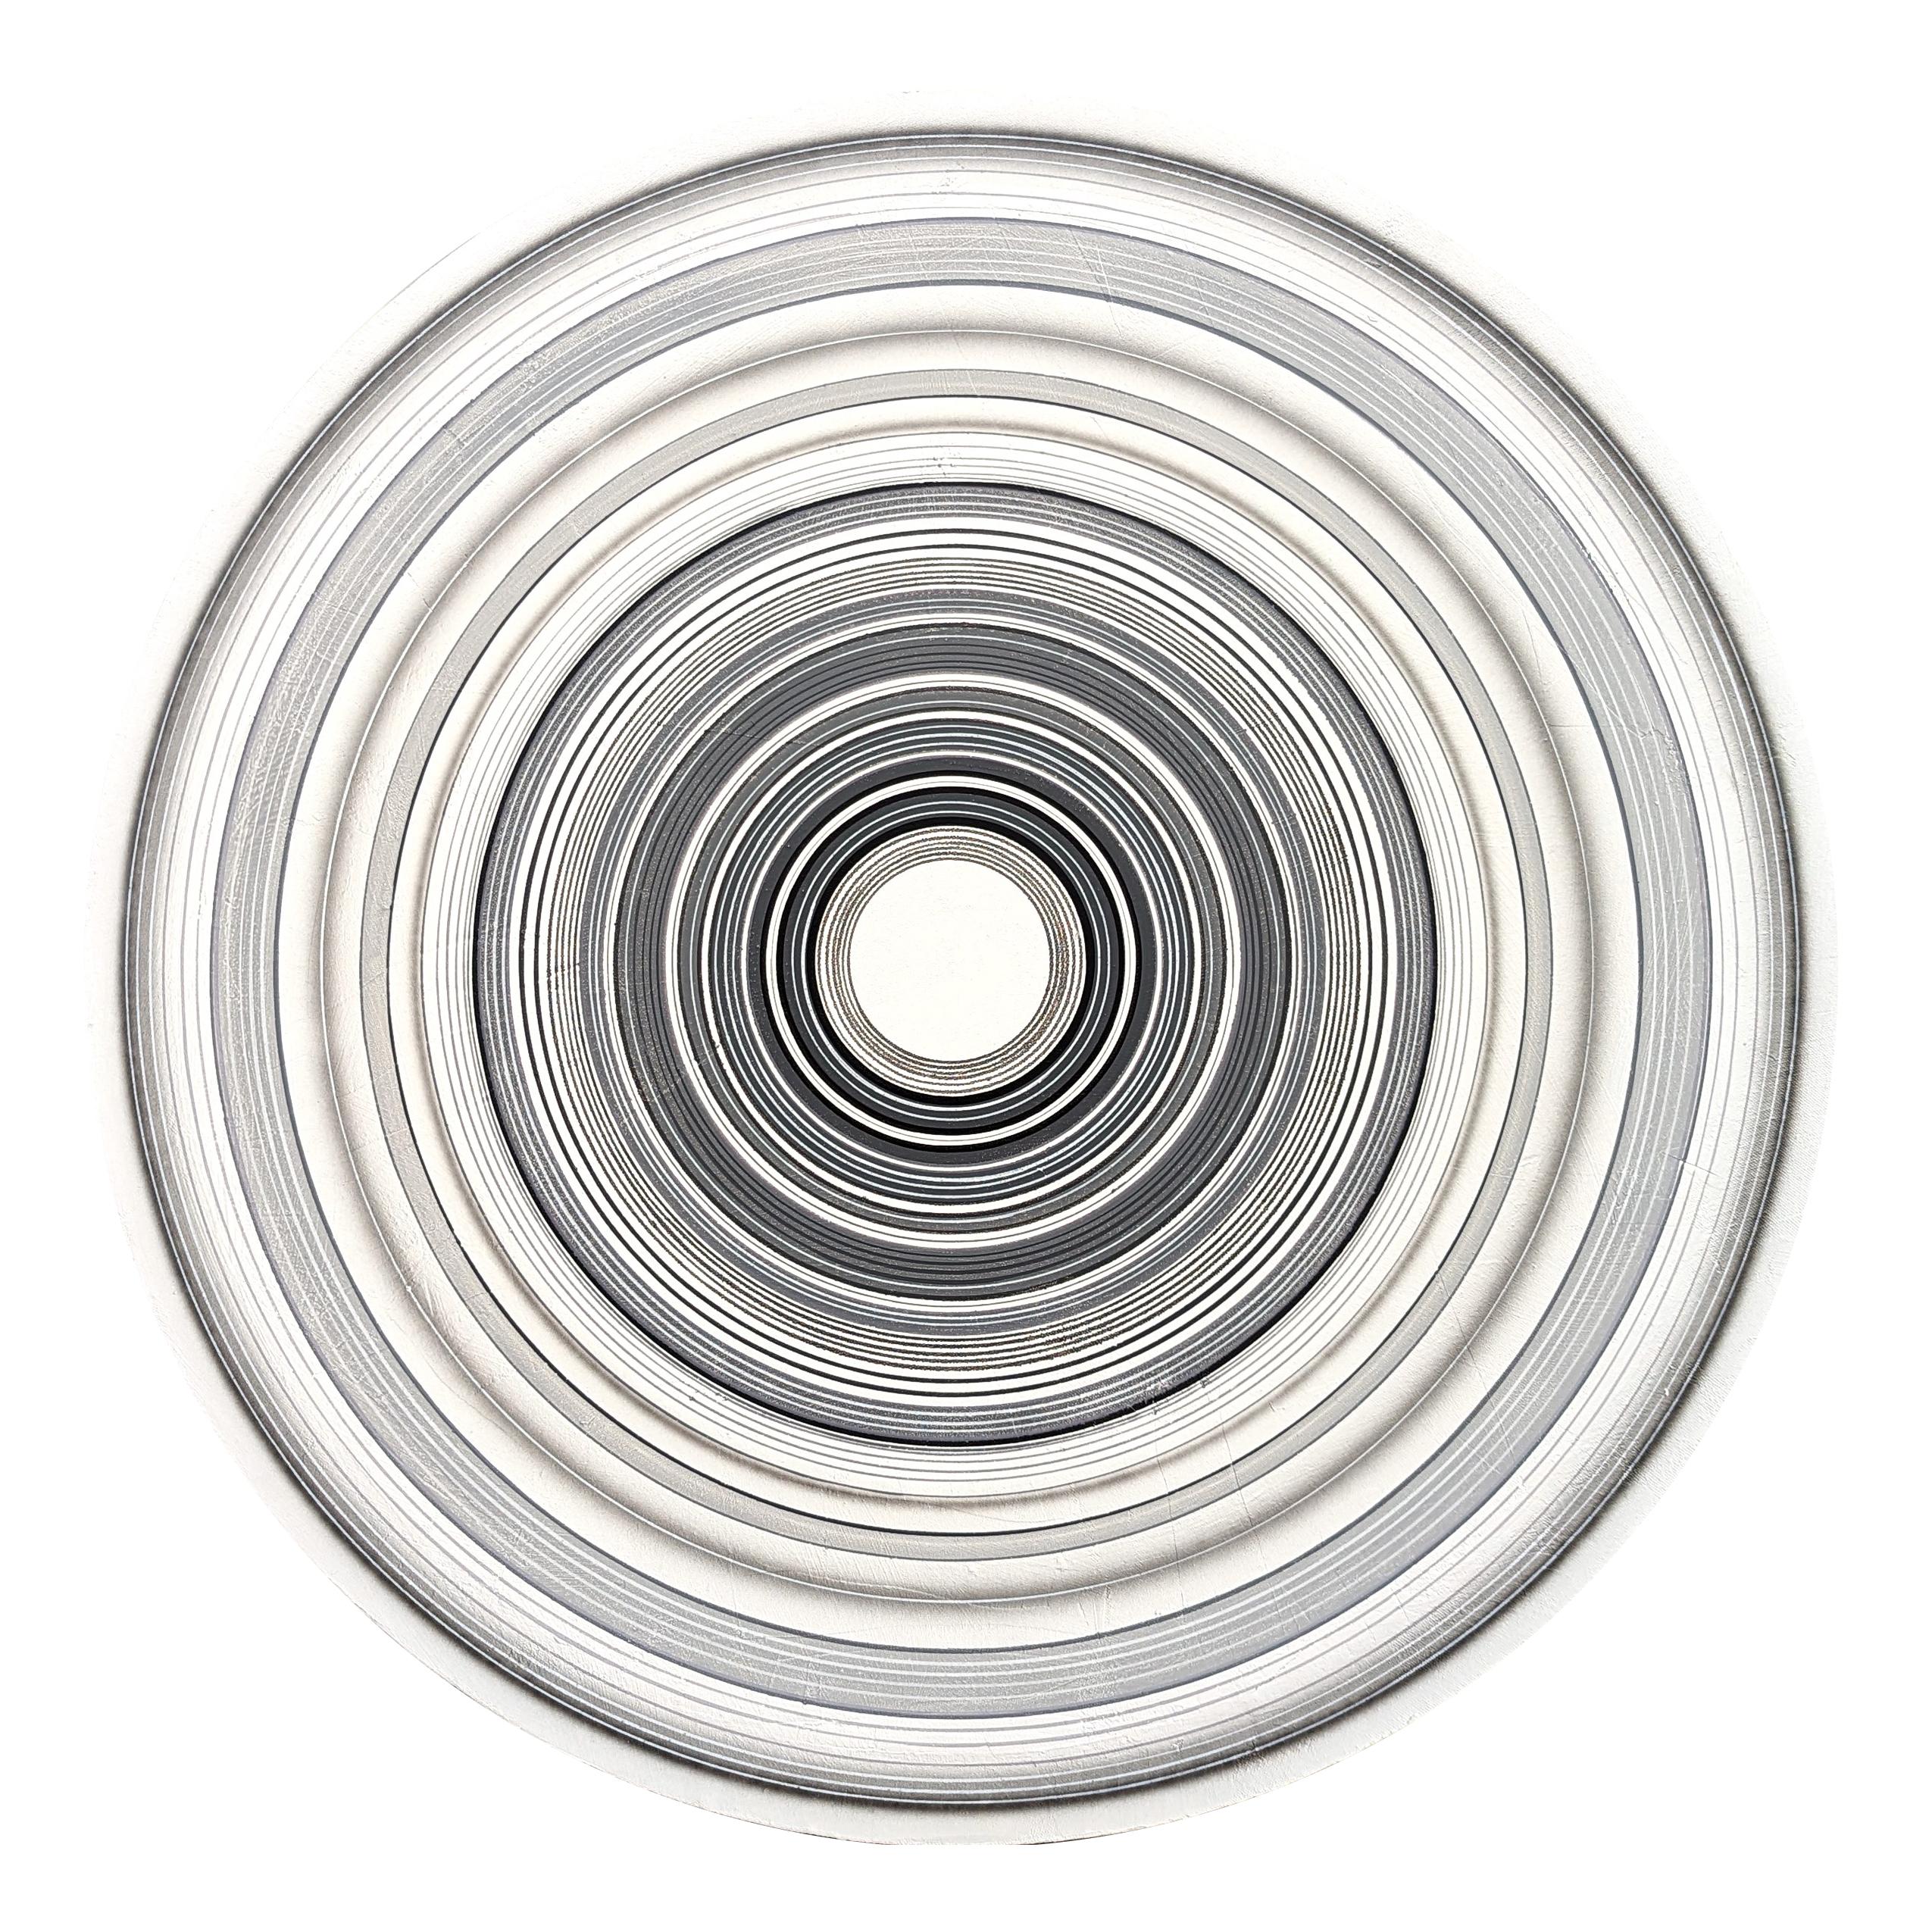 "Kool Thing" Peinture abstraite contemporaine de cercles concentriques gris et blancs